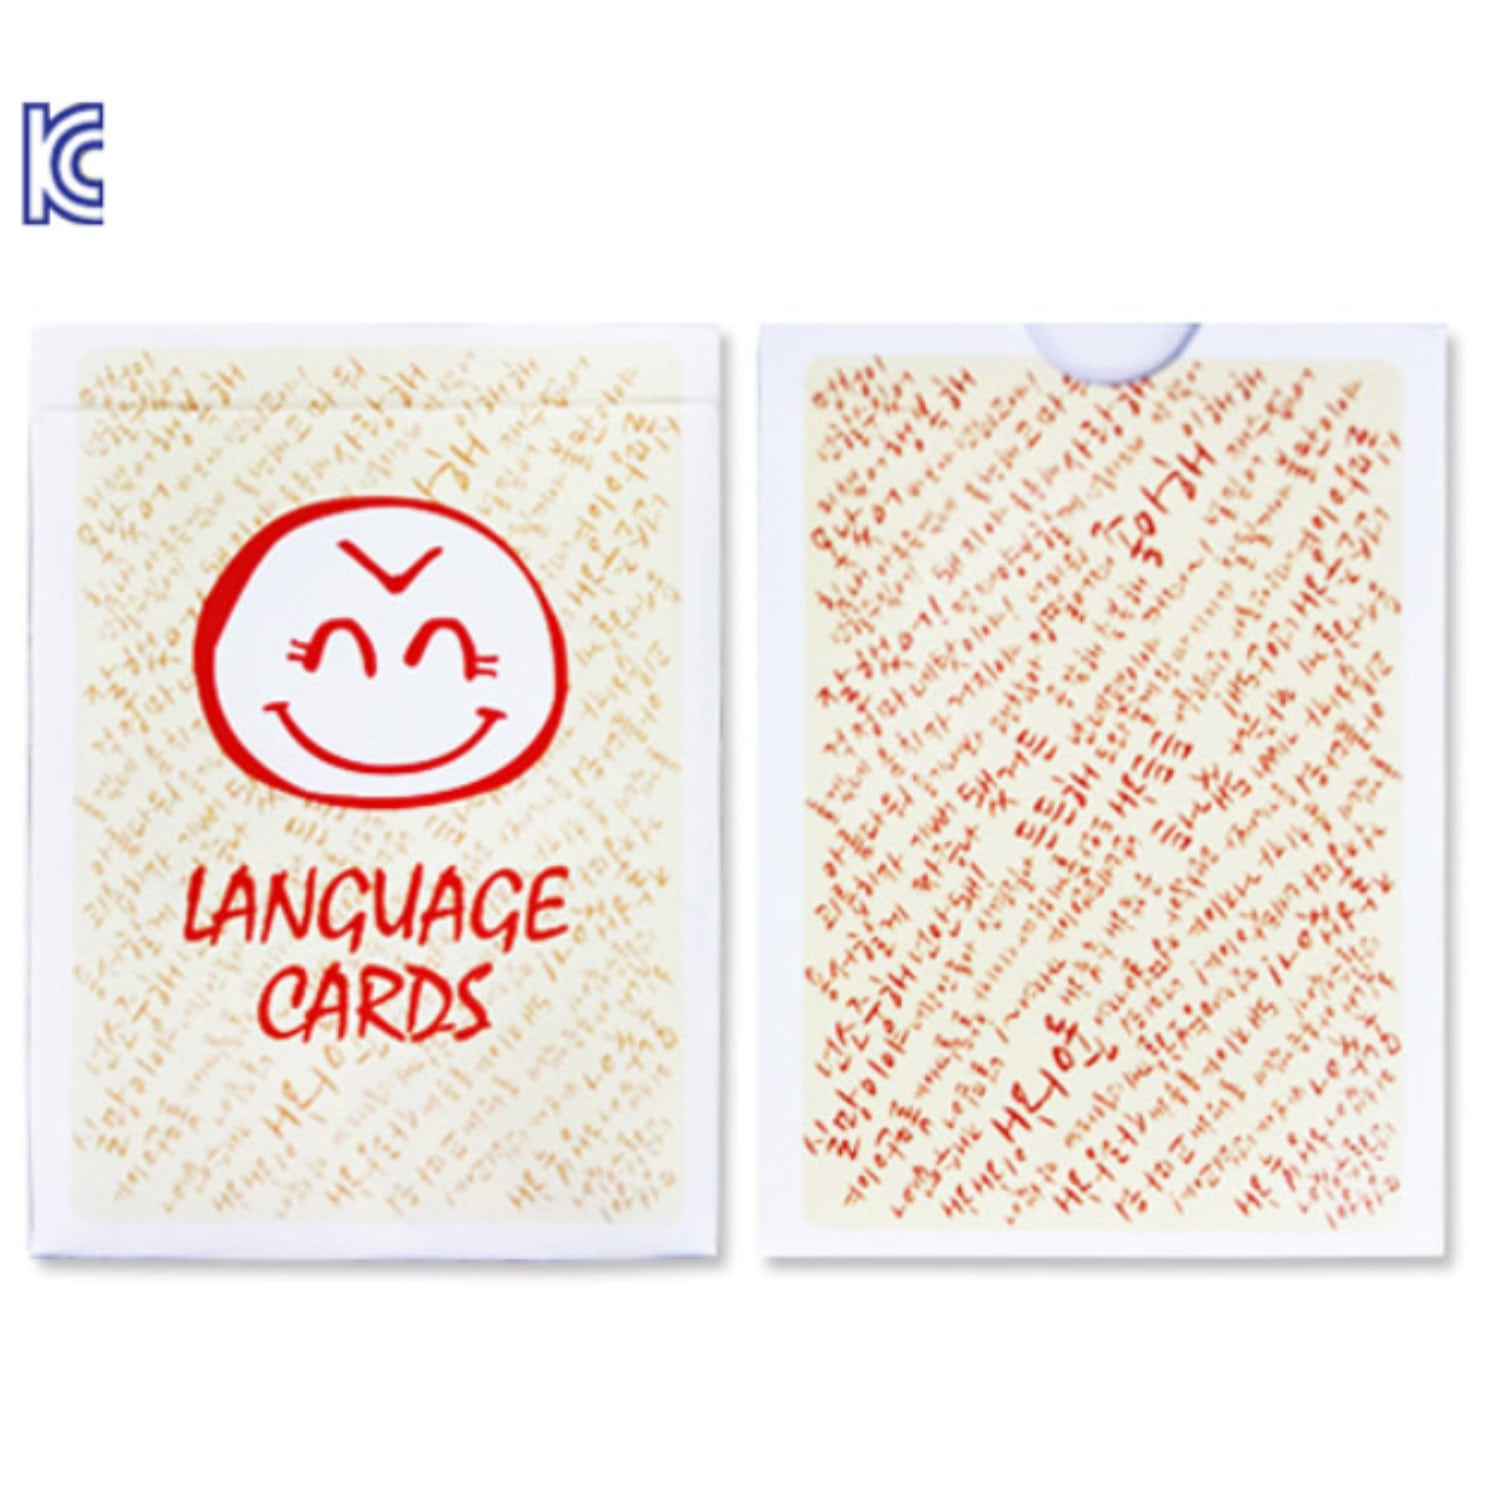 좋은말카드(language-Card) 예쁜 단어들을 주제로 5가지의 마술이 담겨있습니다.